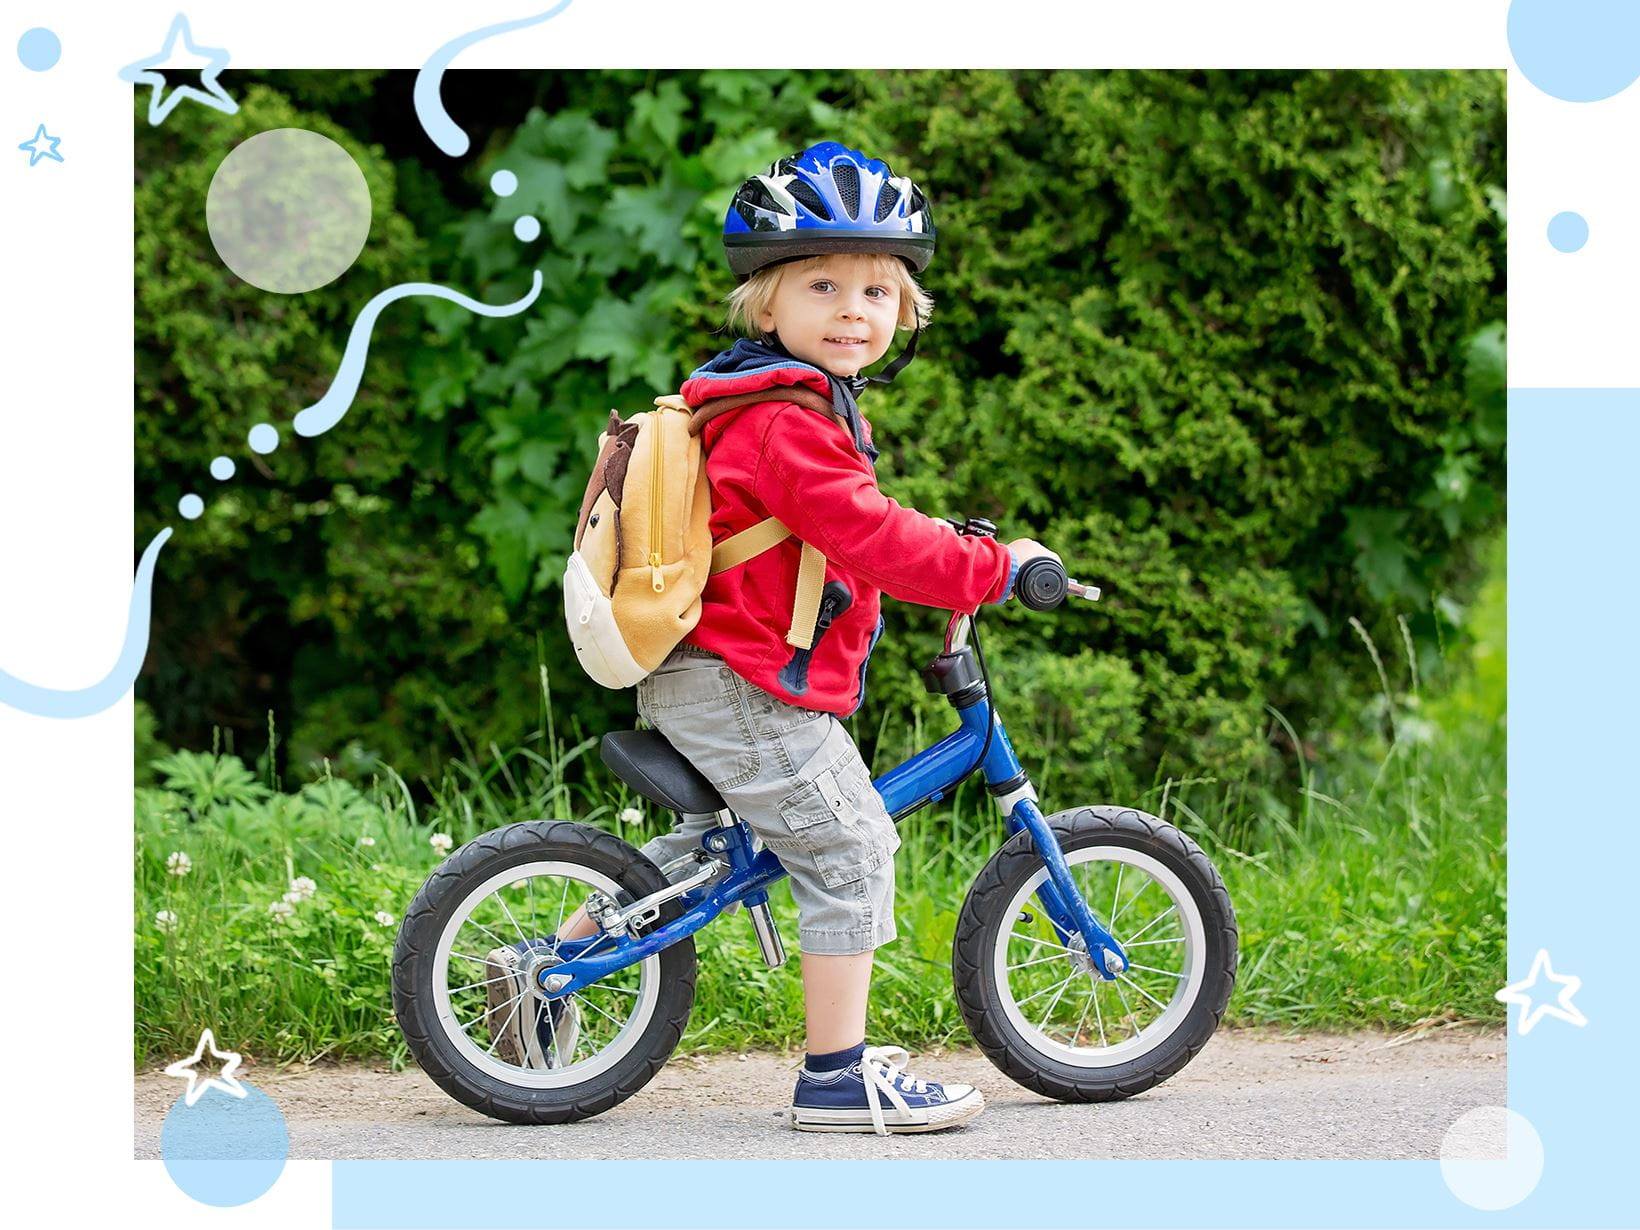 Jak nauczyć dziecko jazdy na rowerze?